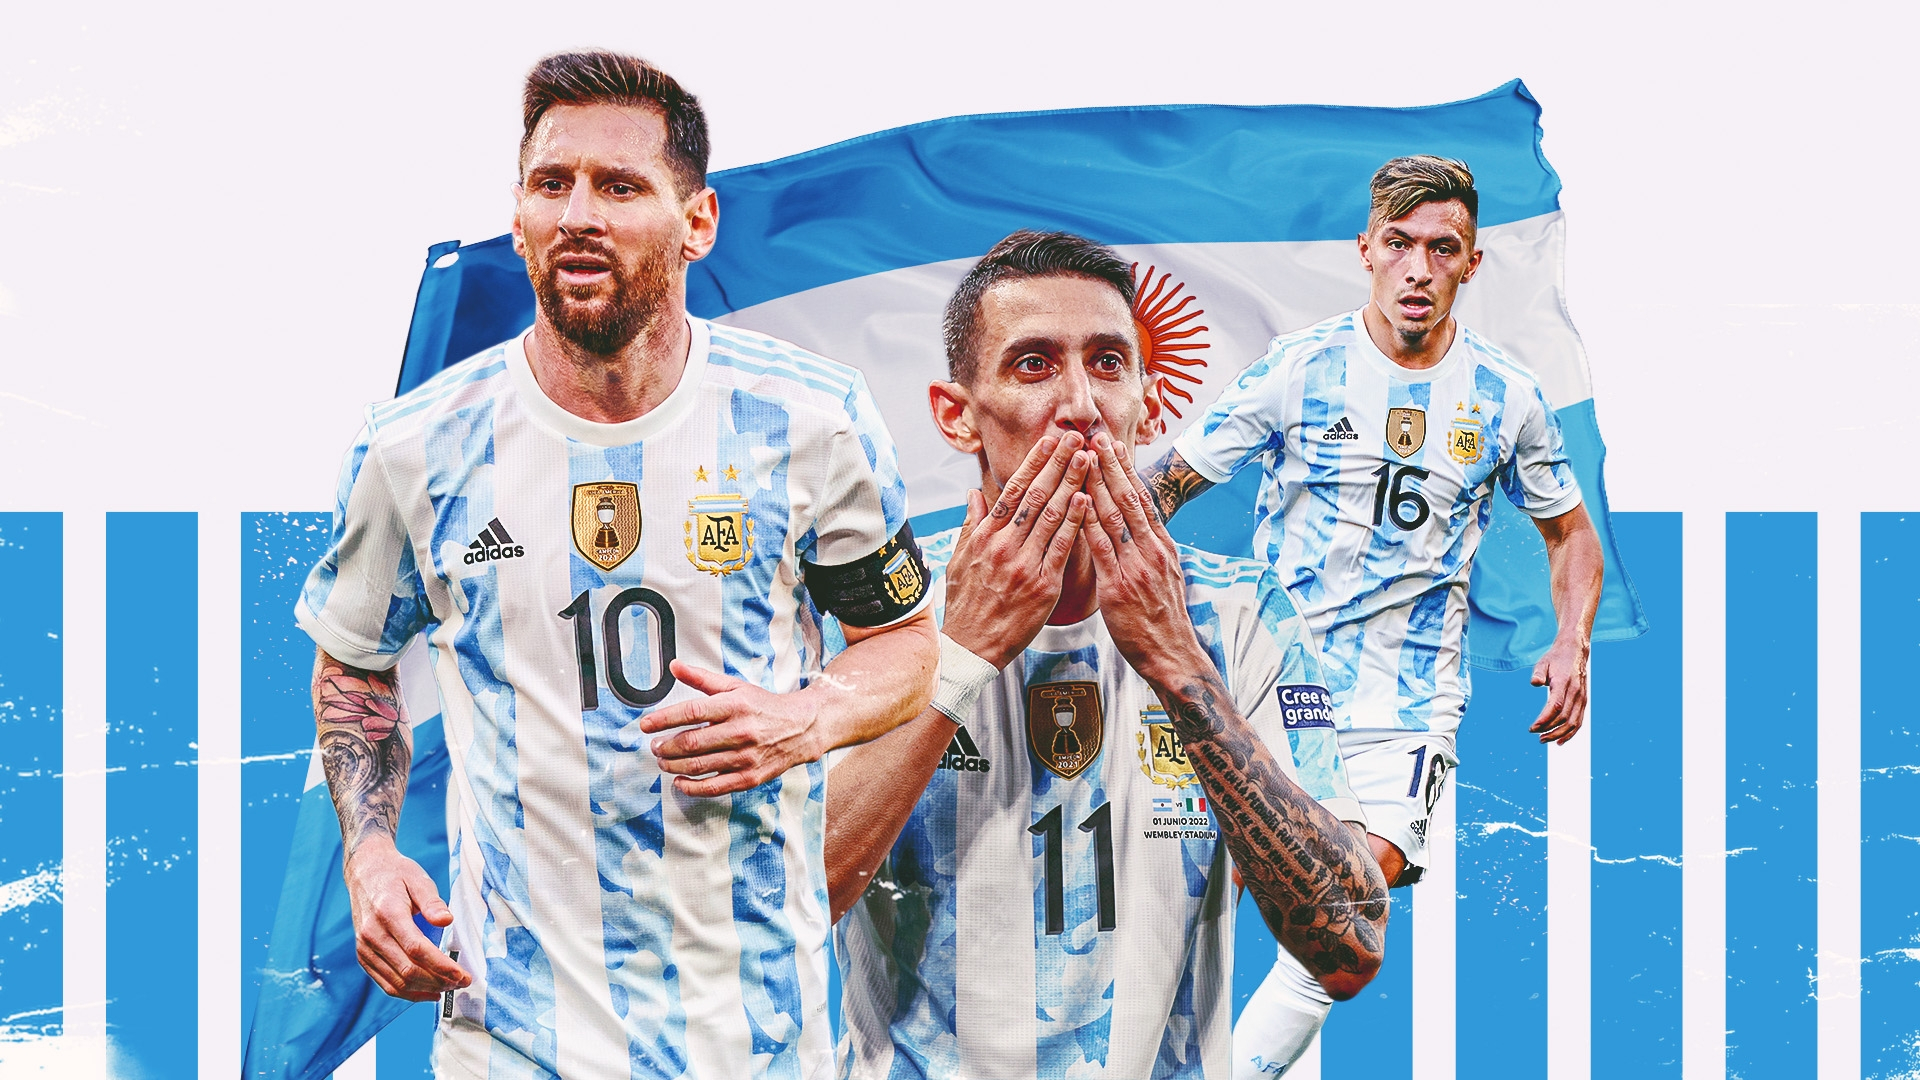 "Siêu máy tính" dự đoán Messi và Argentina vô địch World Cup 2022